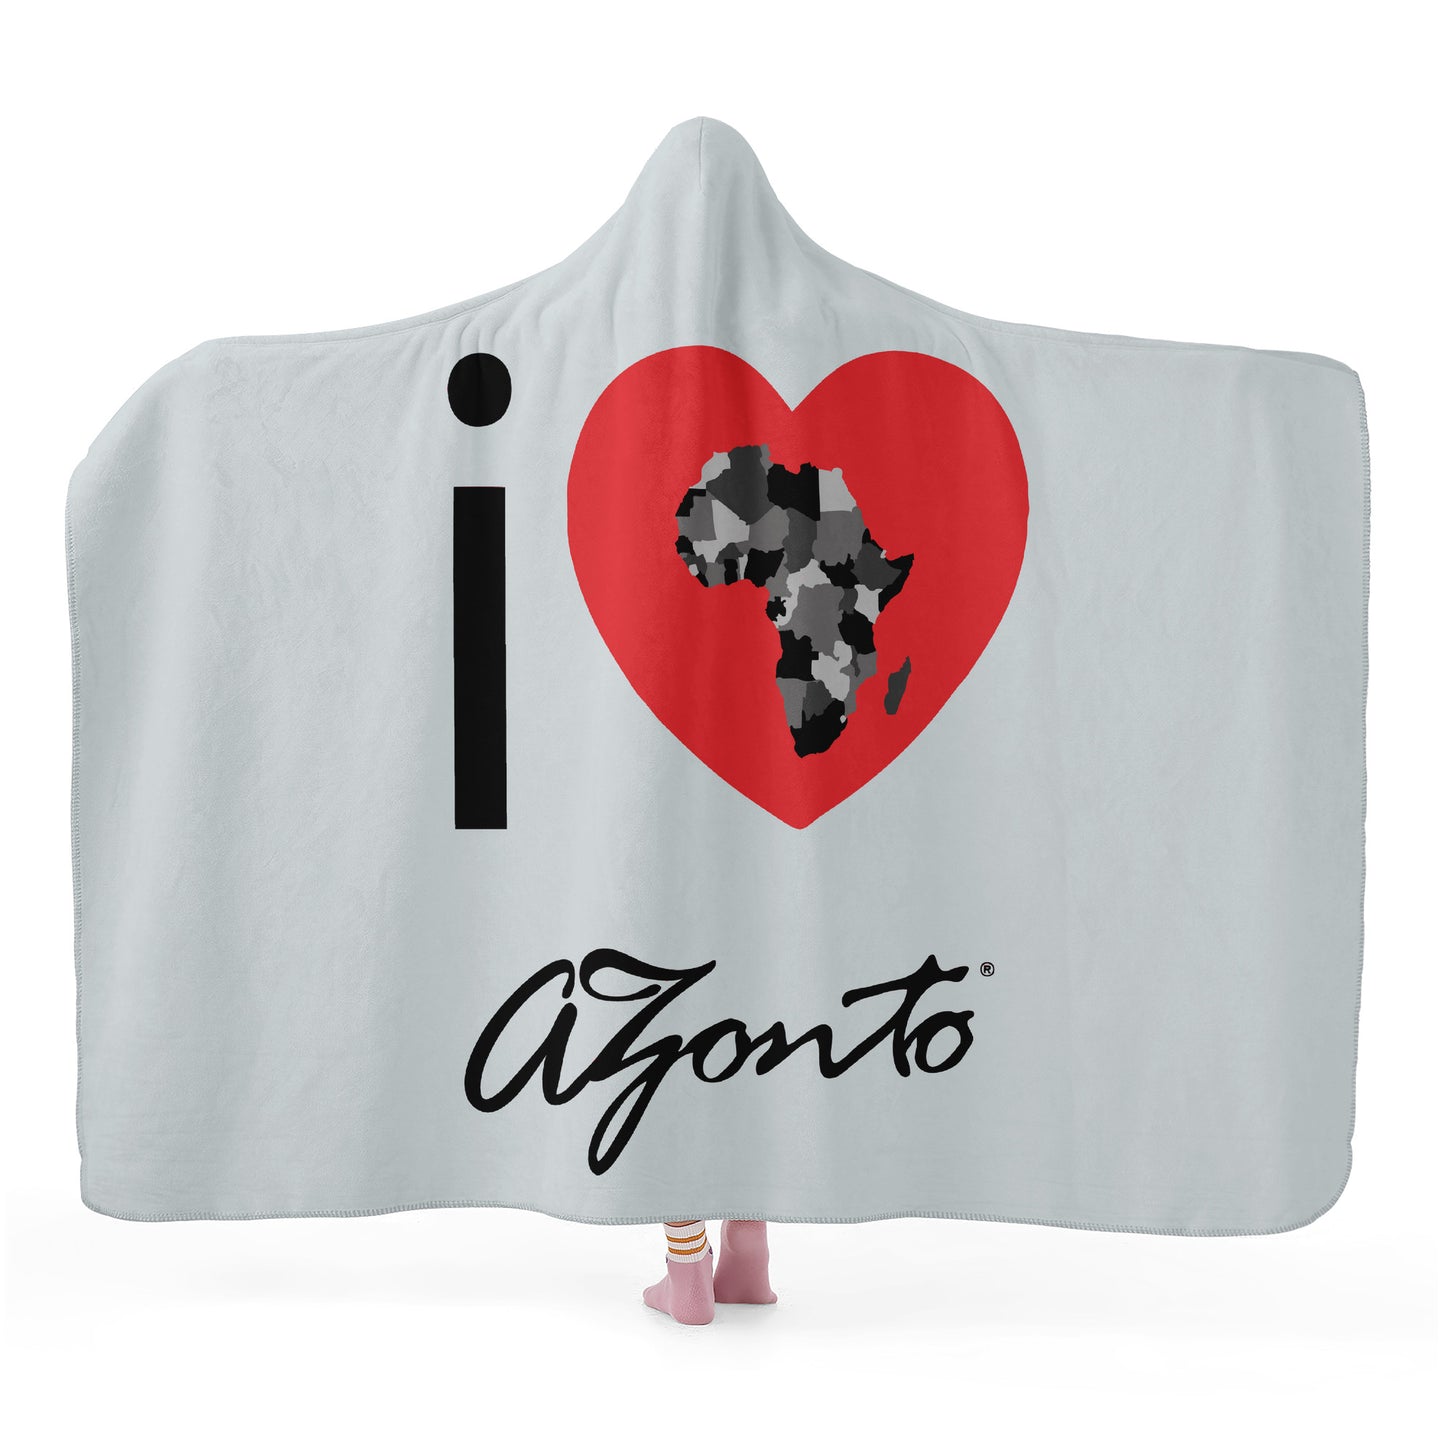 AZONTO Hooded Blanket